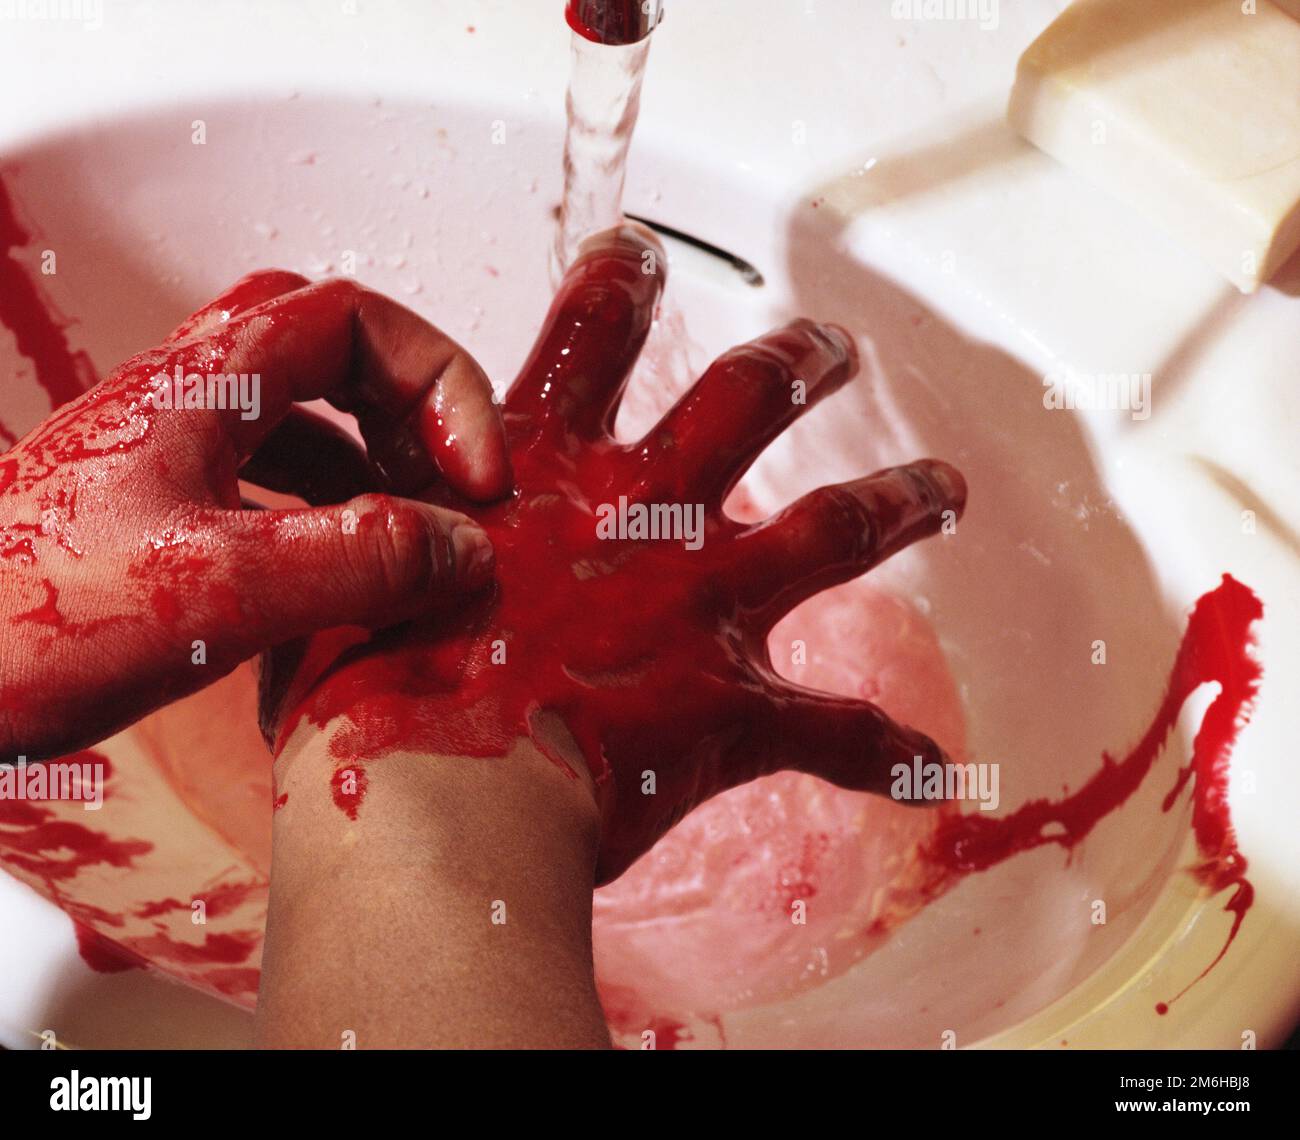 Un homme lavant le sang de ses mains avec de l'eau dans un lavabo. Capture d'image 2000. Date exacte inconnue. Banque D'Images